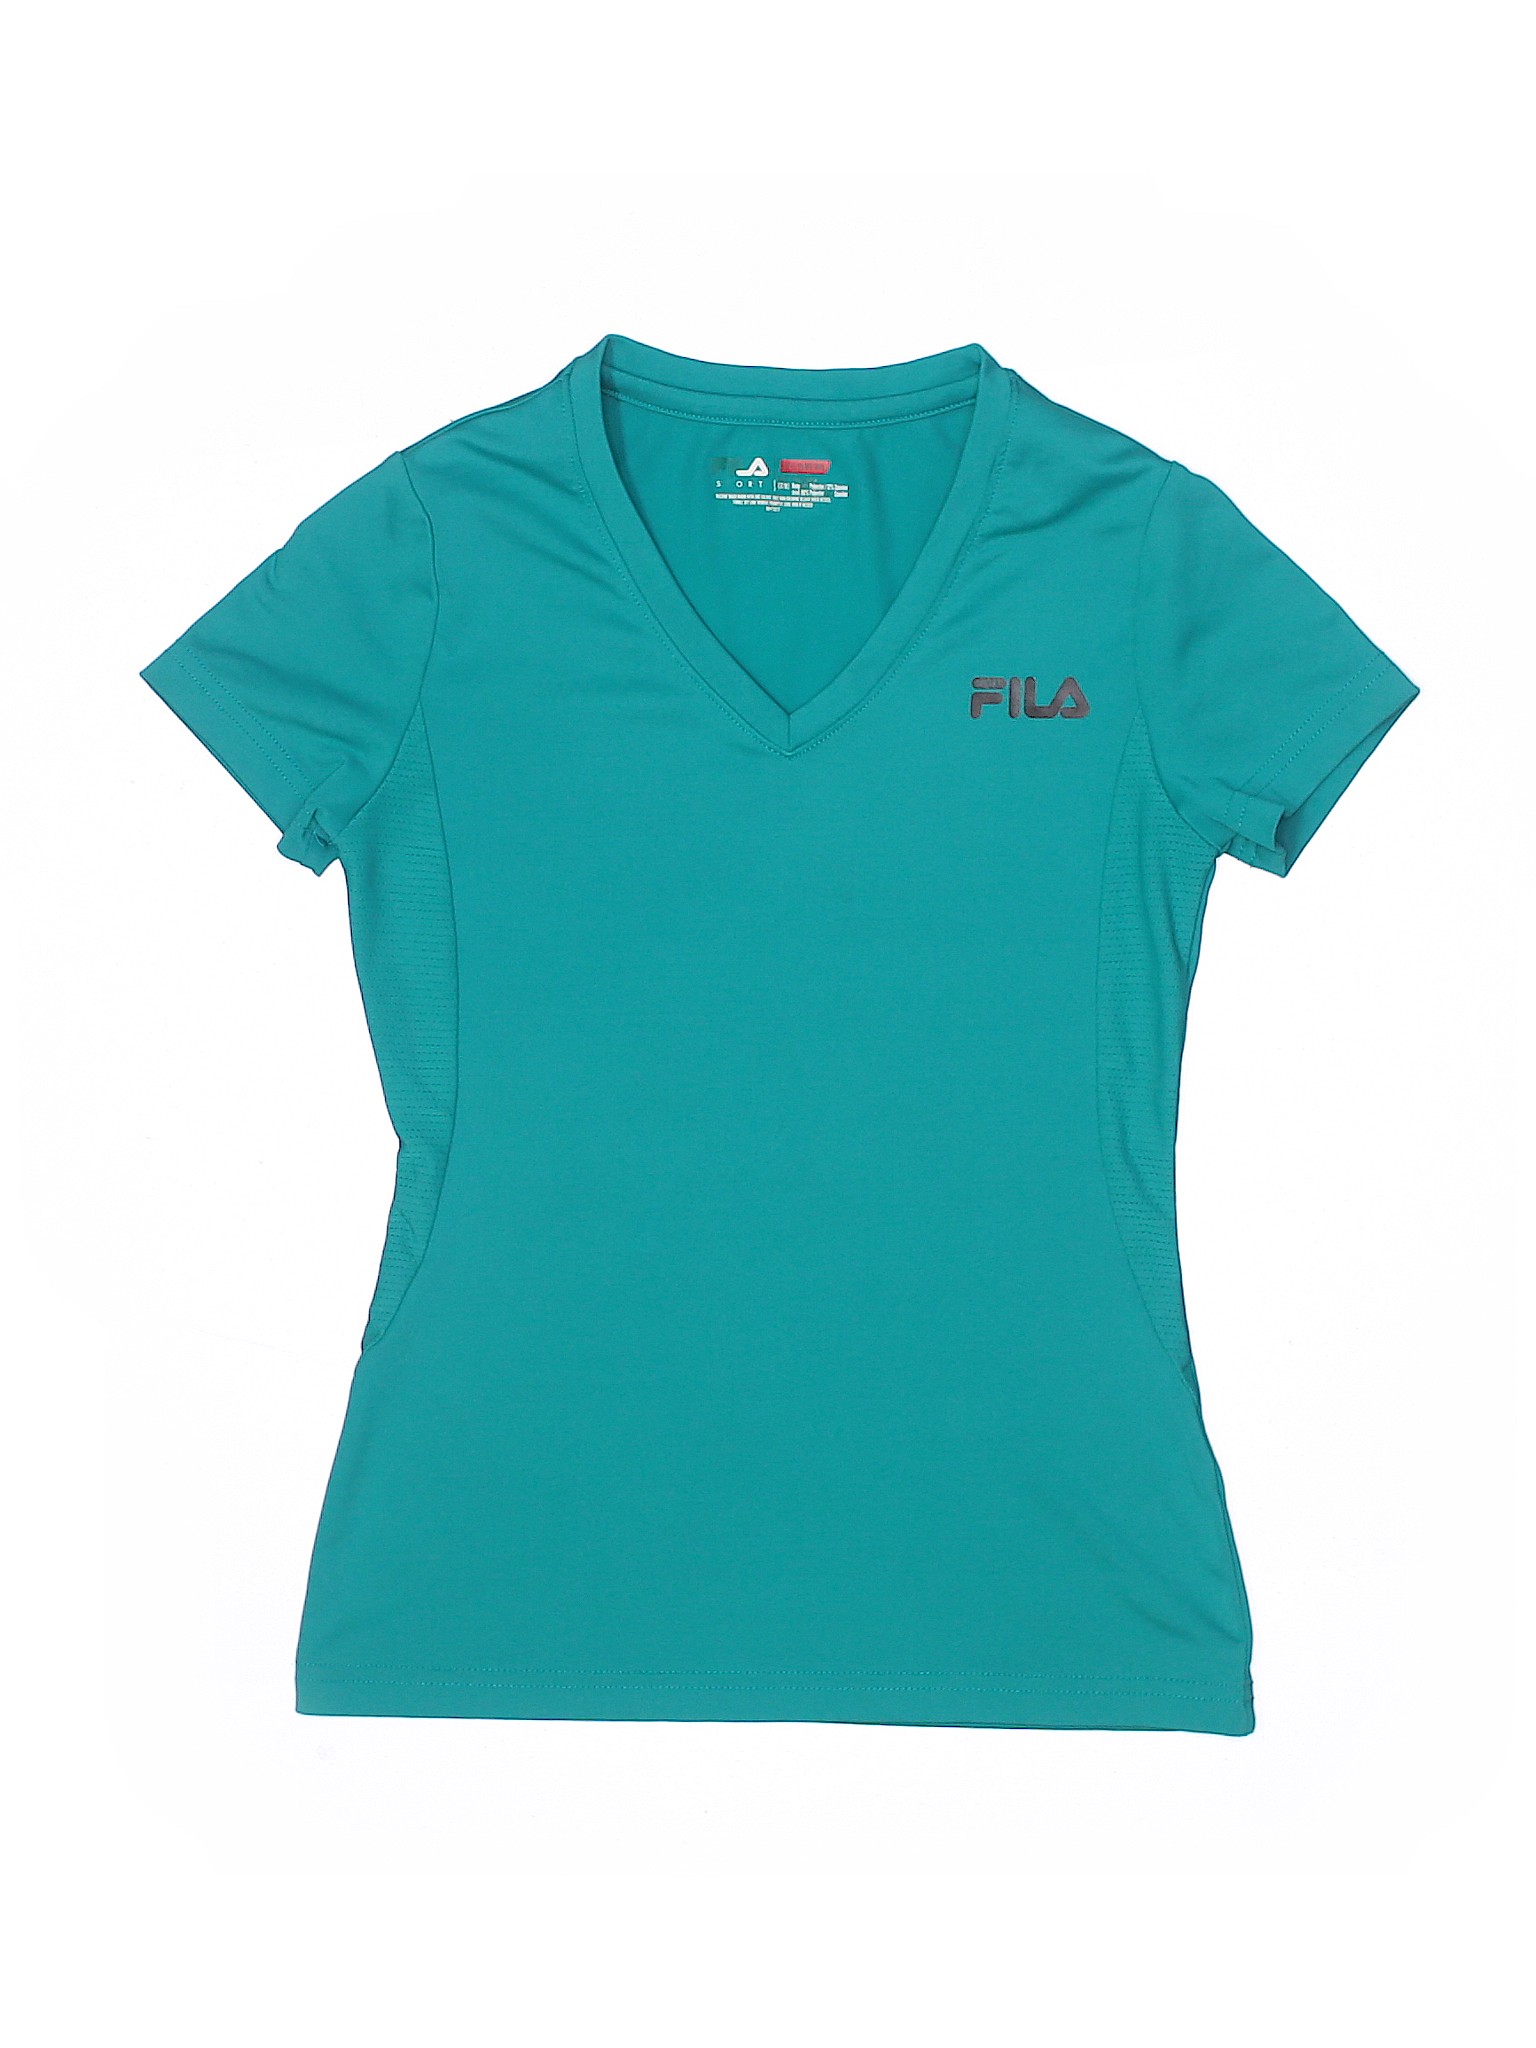 Fila Sport Girls Blue Active T Shirt 7 Ebay